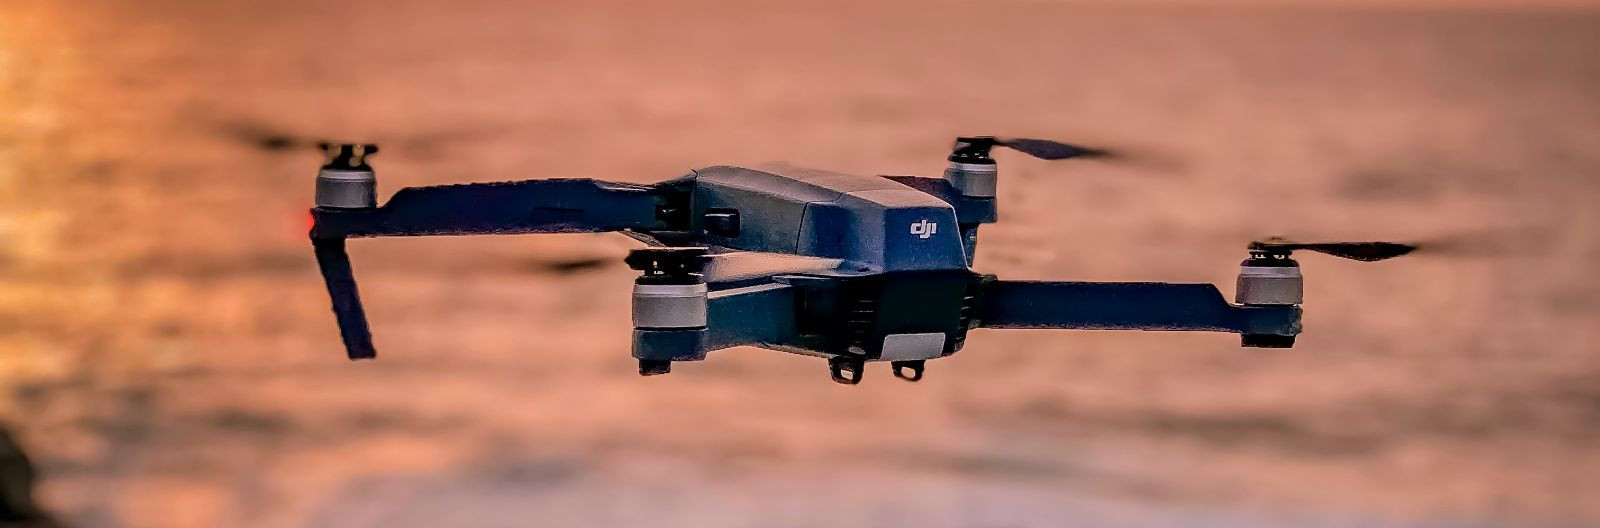 Droone kasutatakse eesmärkidel nagu aerofotograafia, teaduse ja uurimistöö, turvakontroll, videovõtted, sport jne, võimalused on piiramatud.o   Võidusõidudrooni